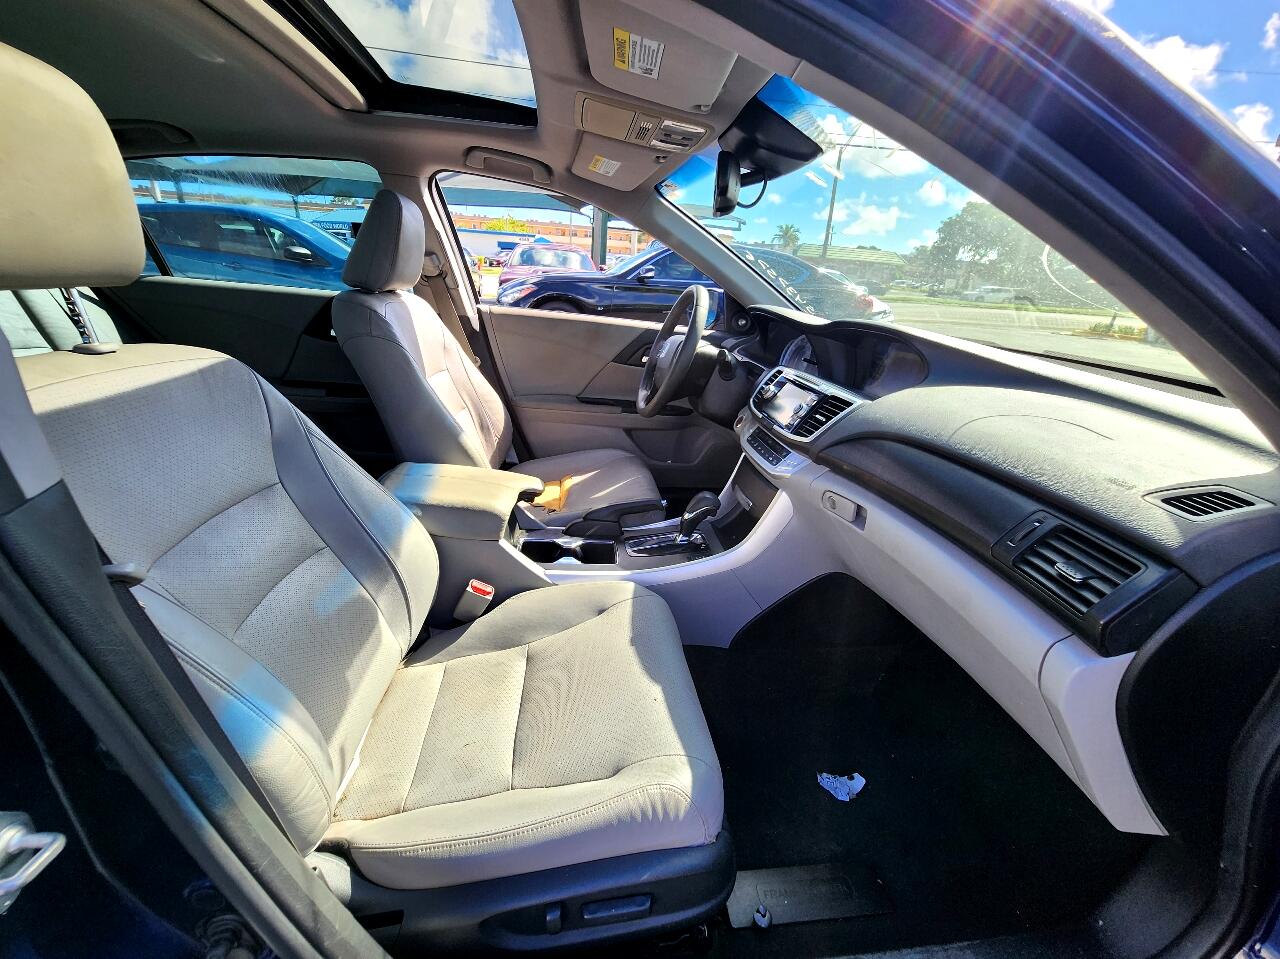 2013 HONDA Accord Sedan - $13,999